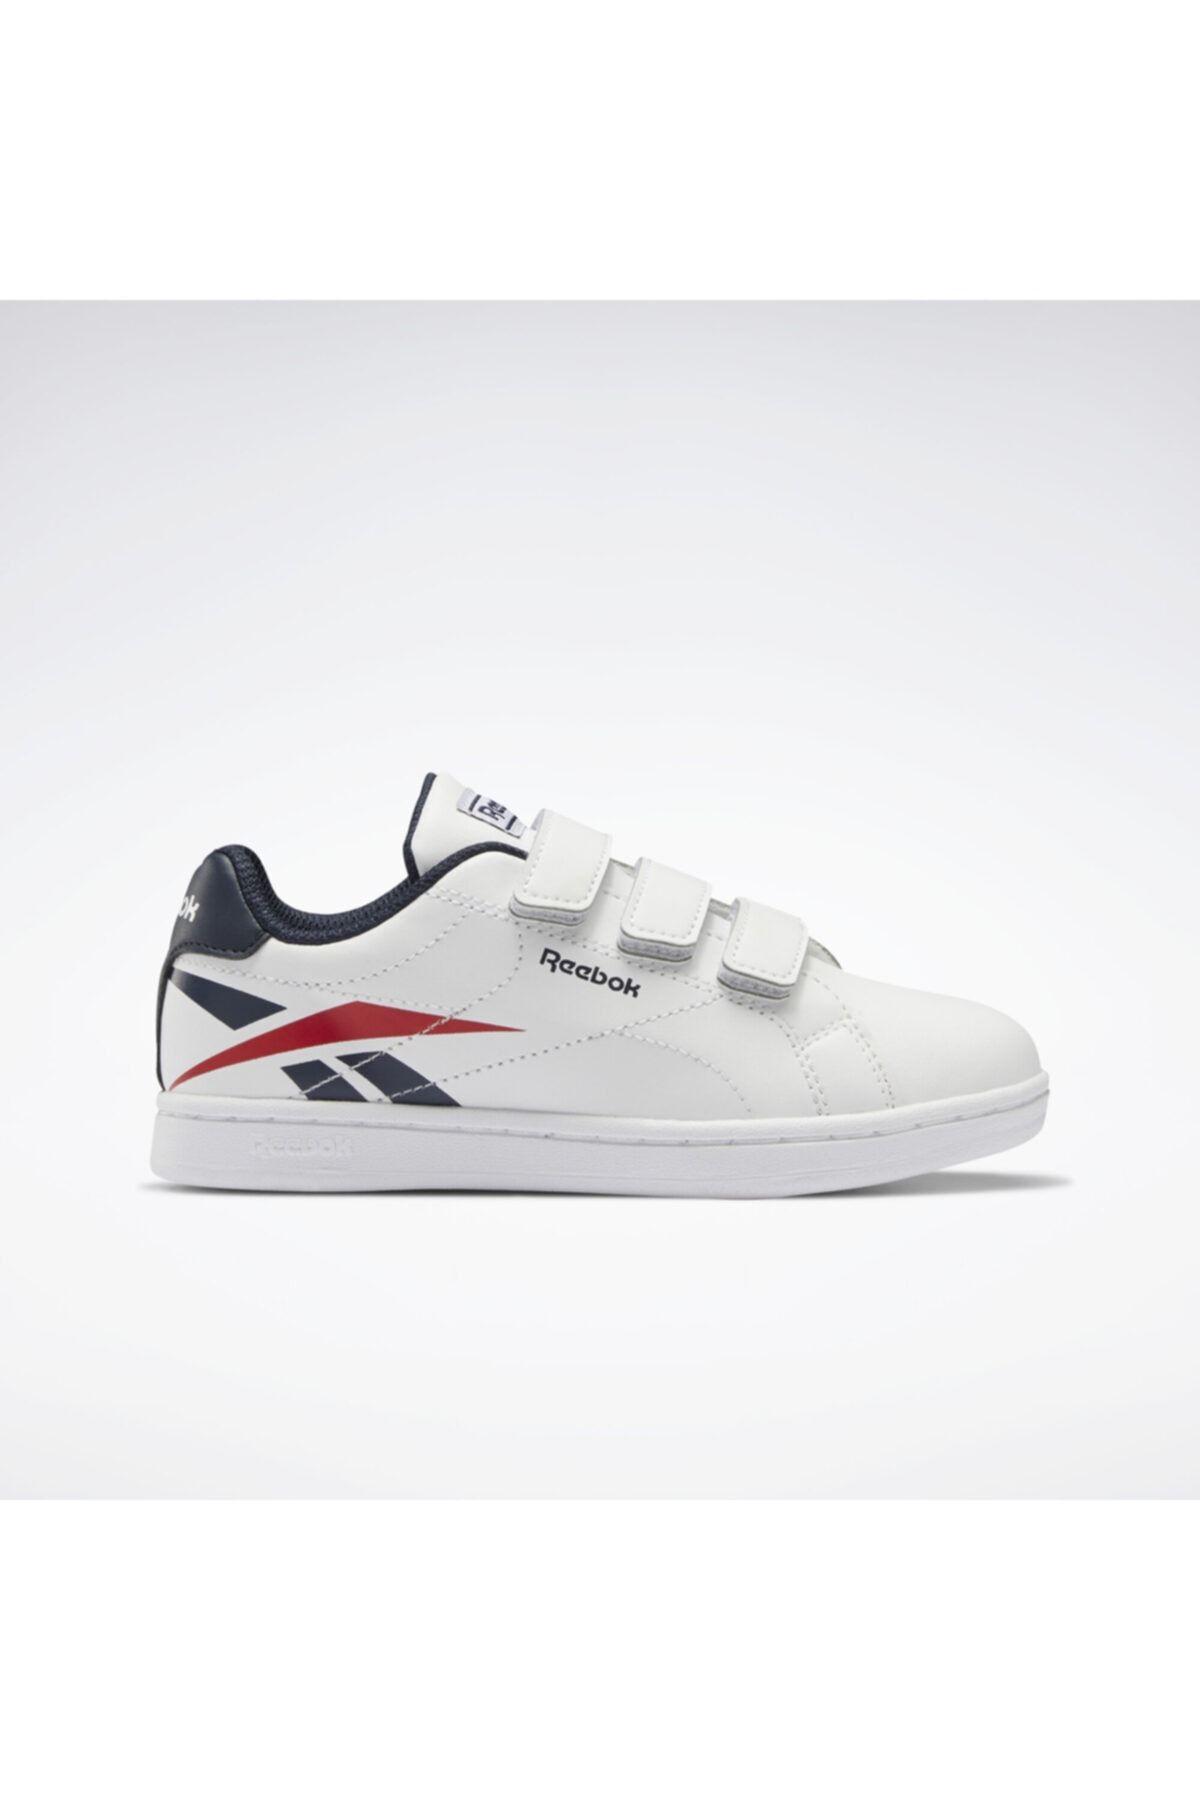 Reebok RBK ROYAL COMPLETE Beyaz Erkek Çocuk Sneaker Ayakkabı 100664020